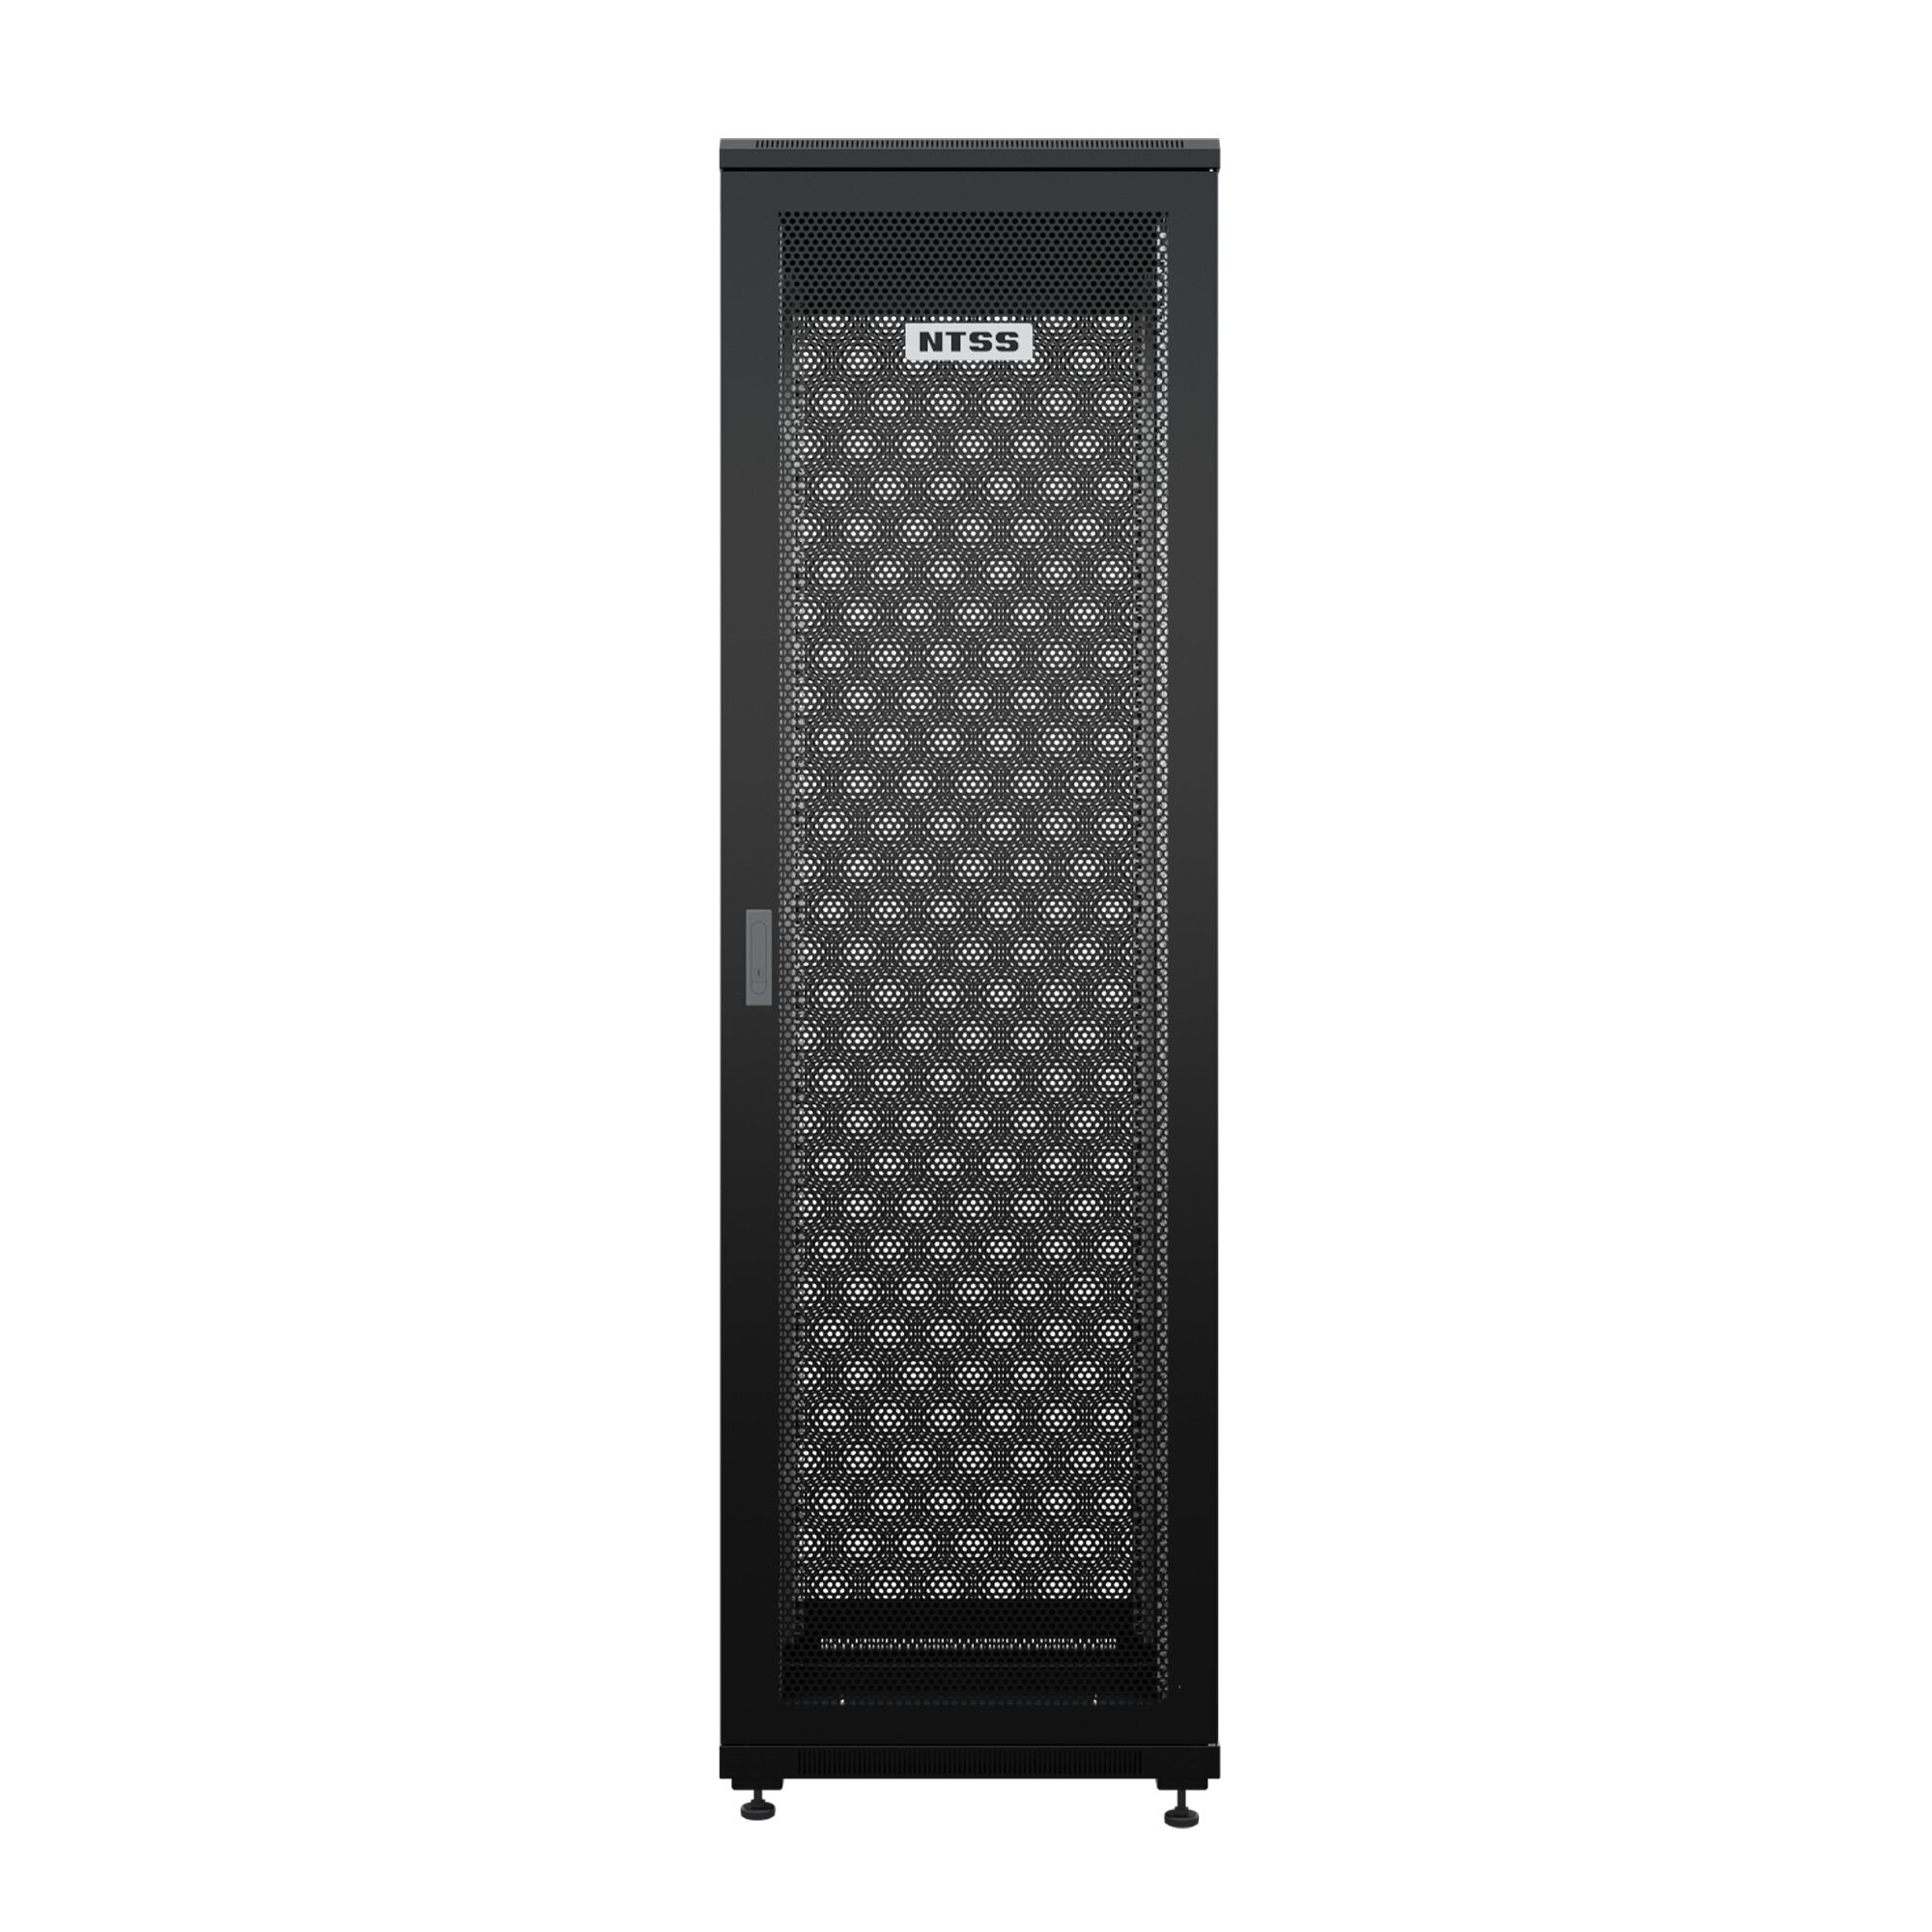 Шкаф напольный универсальный серверный NTSS R 42U 600х600мм, 4 профиля 19, двери перфорированная и перфорированная, боко